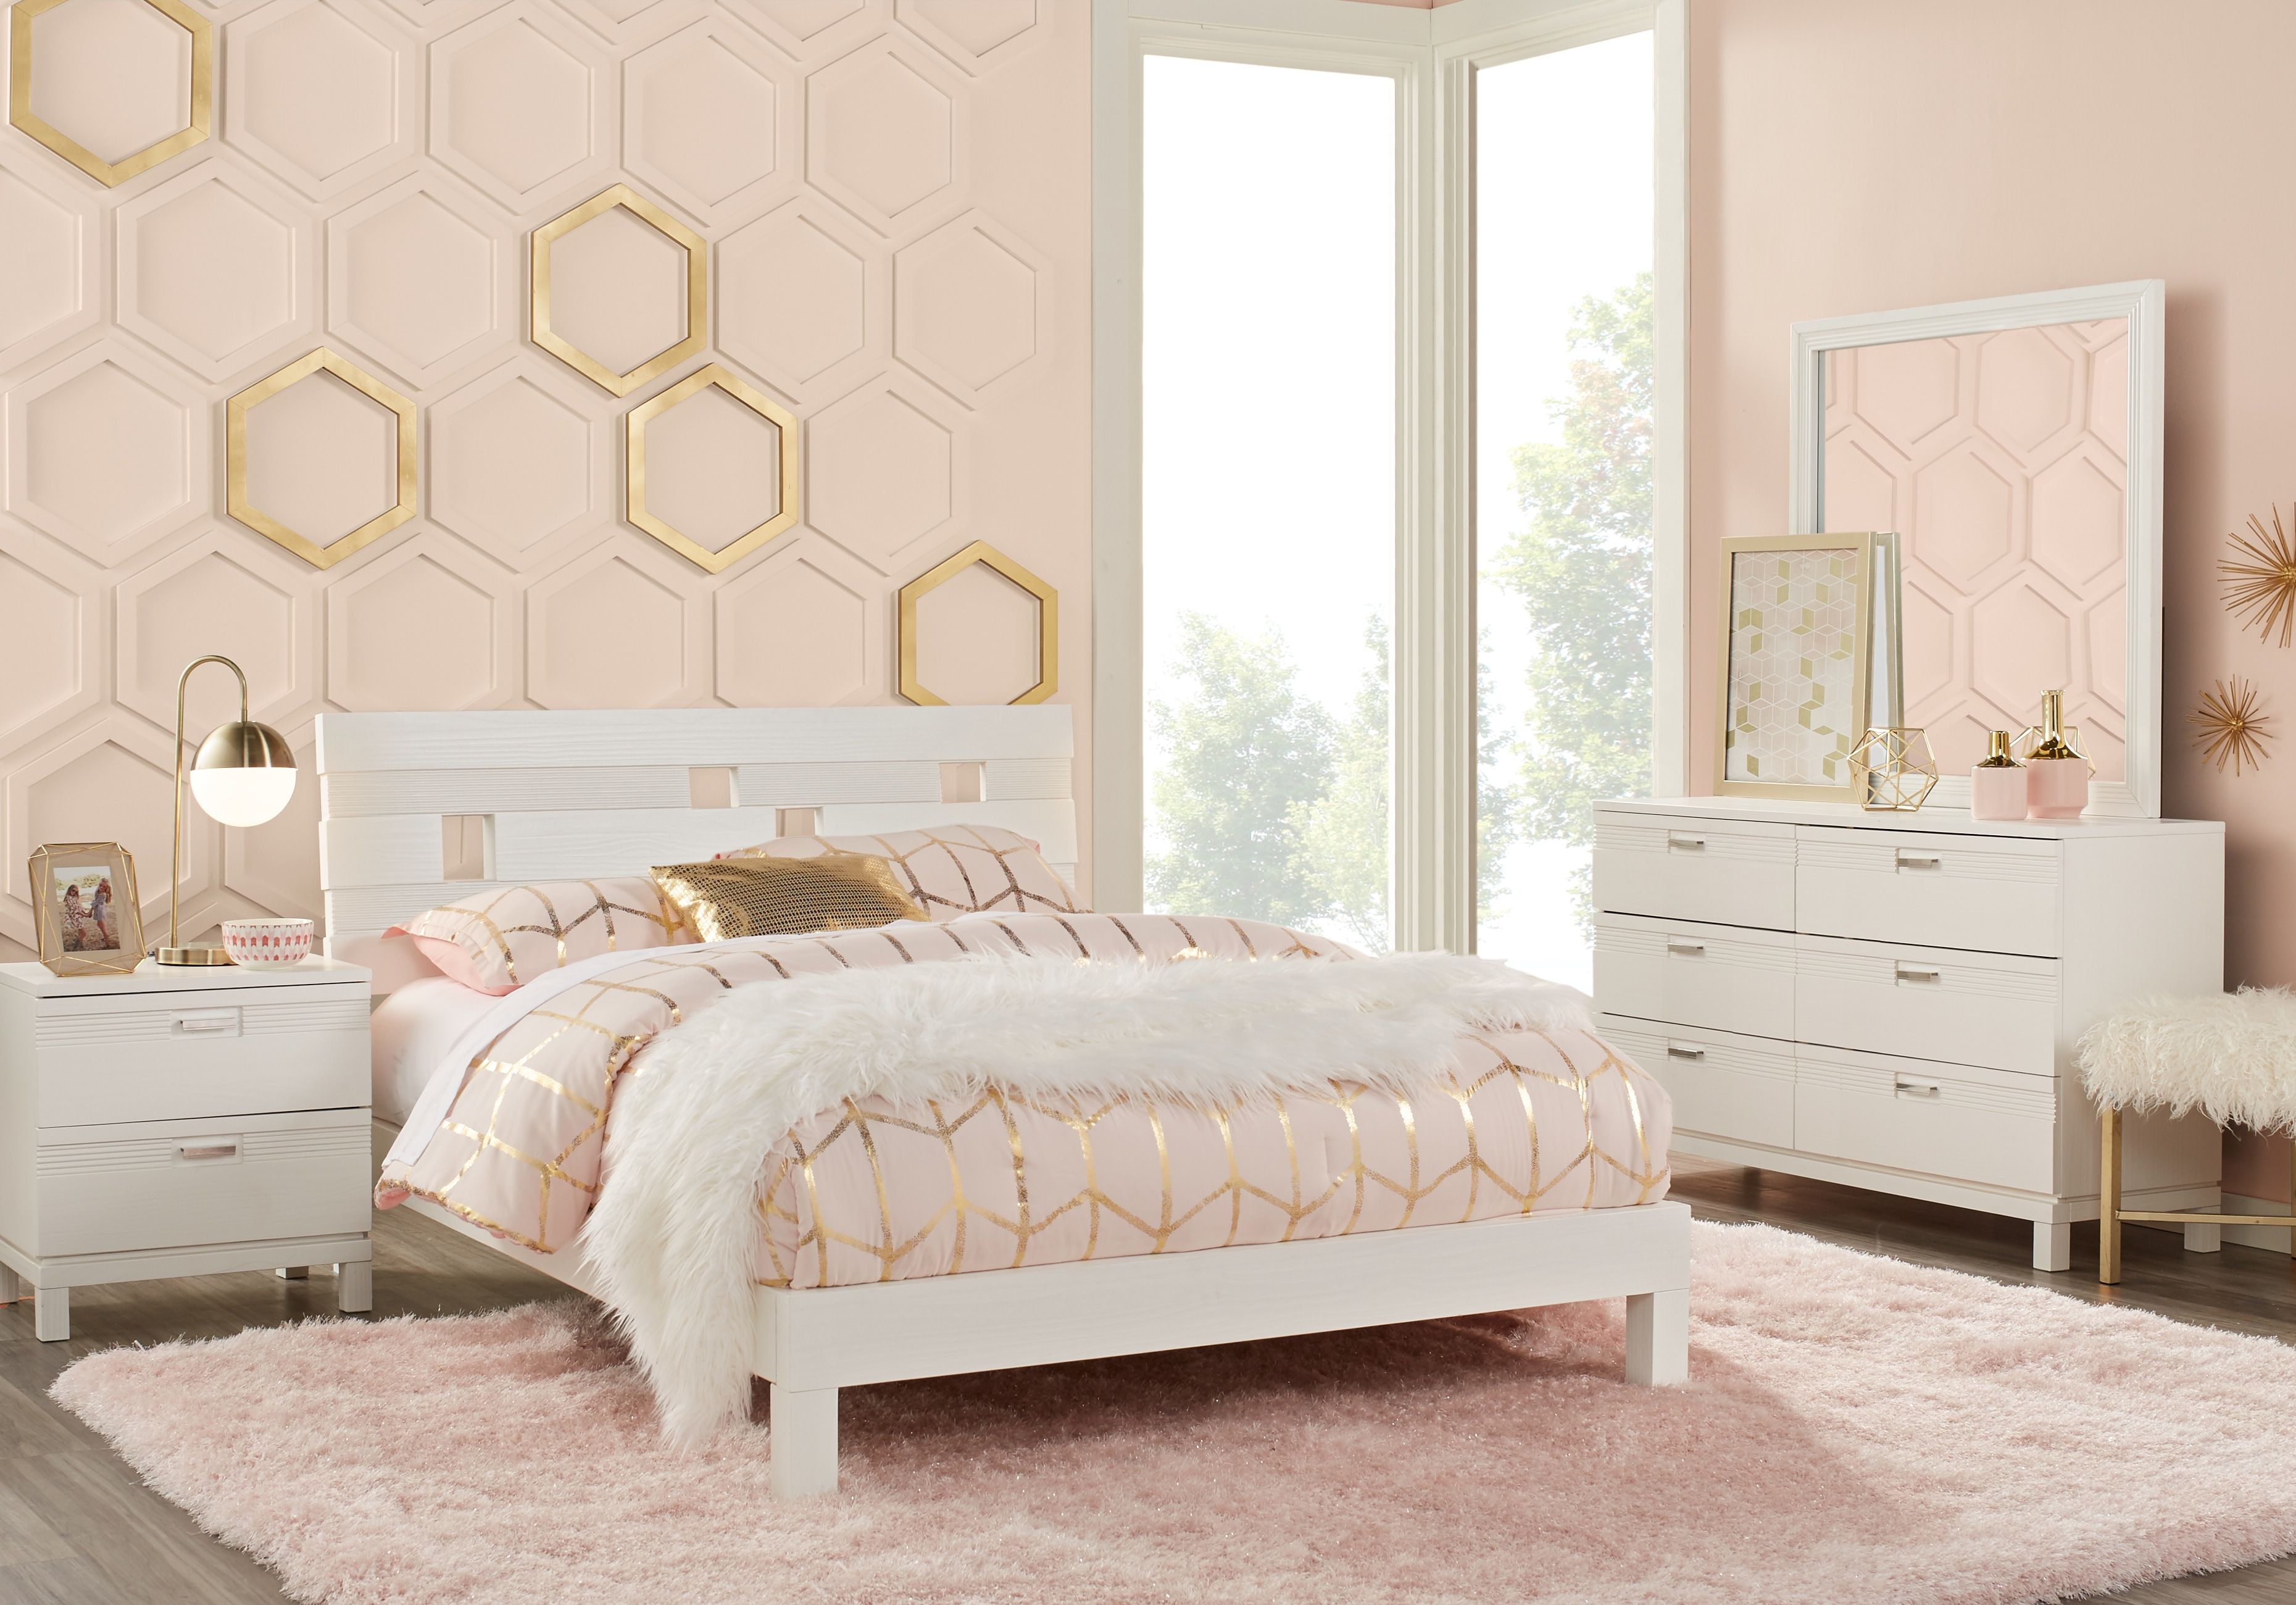 Gardenia Kids White 5 Pc Full Platform Bedroom In 2019 Bedroom intended for size 3720 X 2600